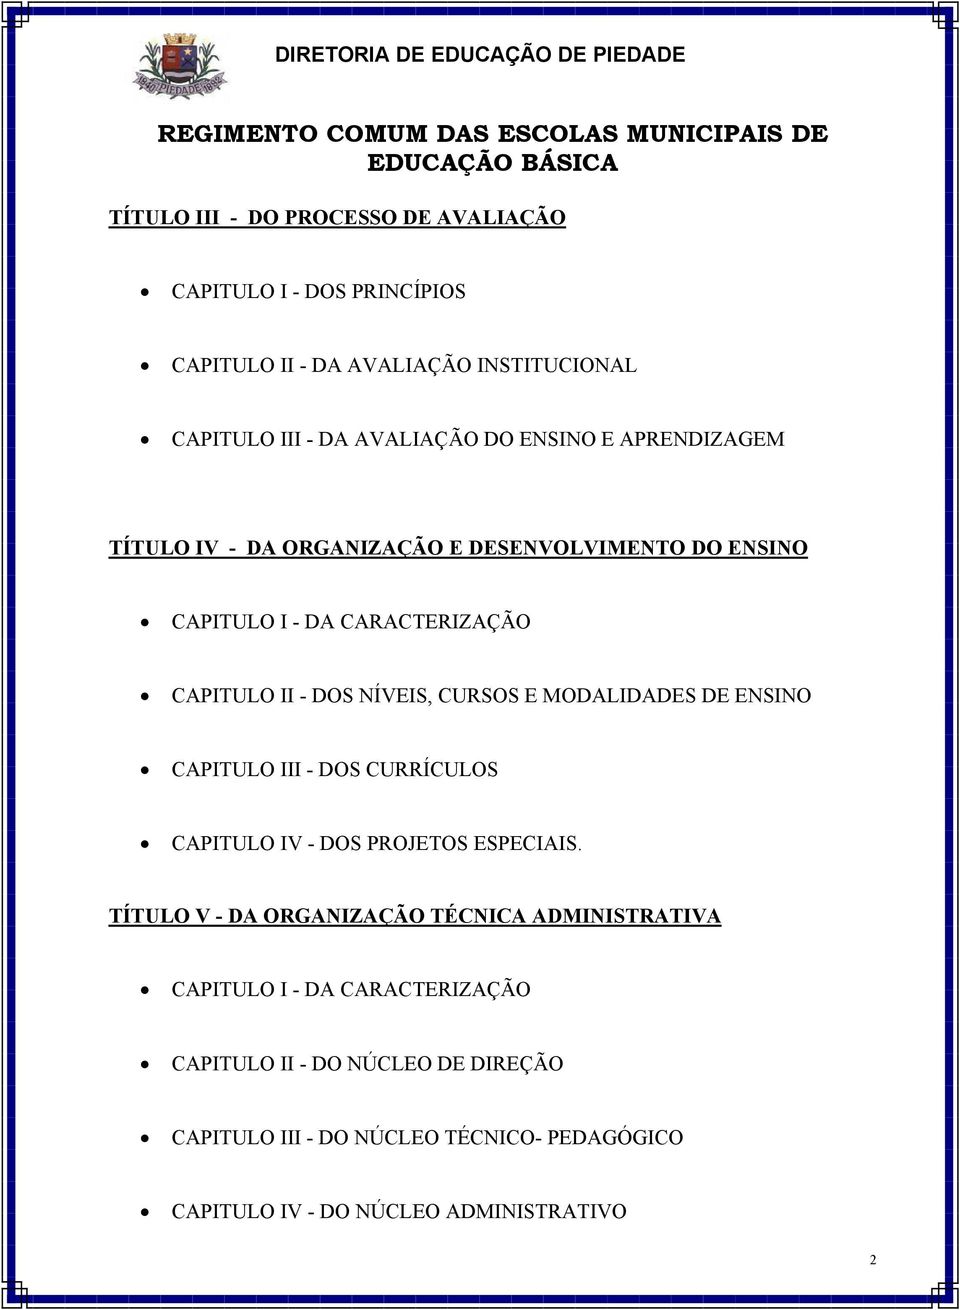 MODALIDADES DE ENSINO CAPITULO III - DOS CURRÍCULOS CAPITULO IV - DOS PROJETOS ESPECIAIS.